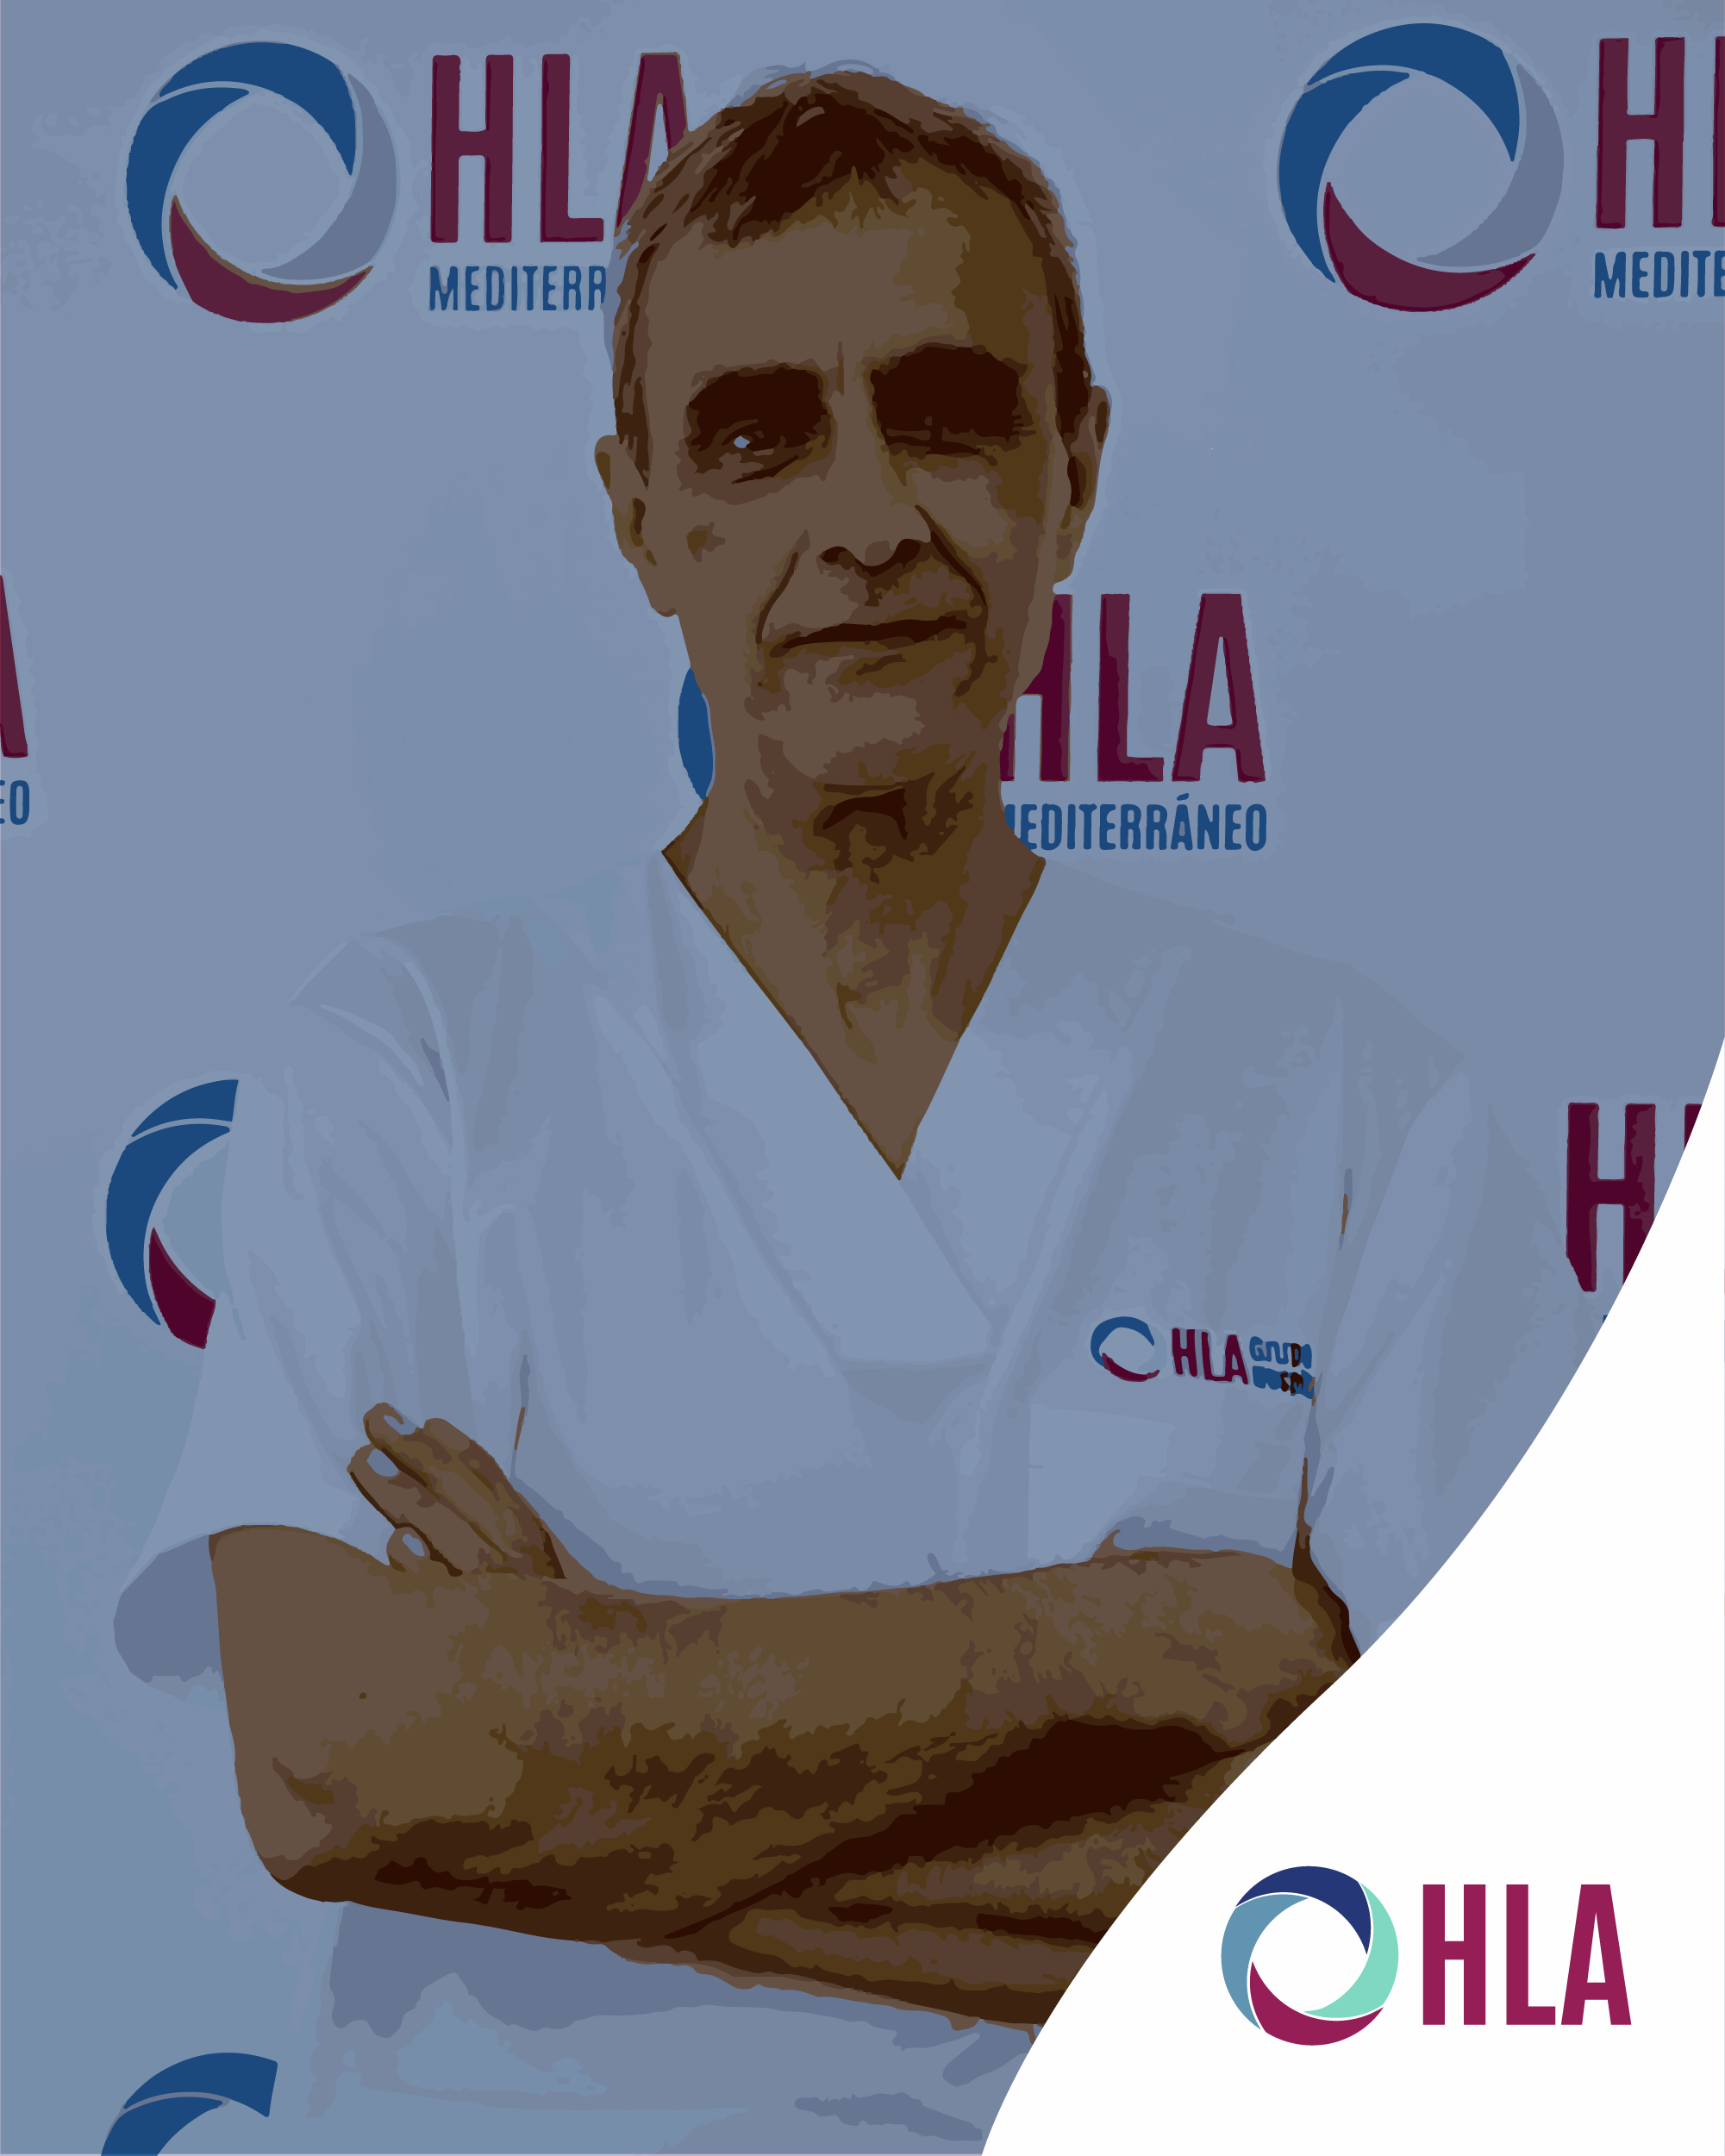 Dr. Alberto Lafarga